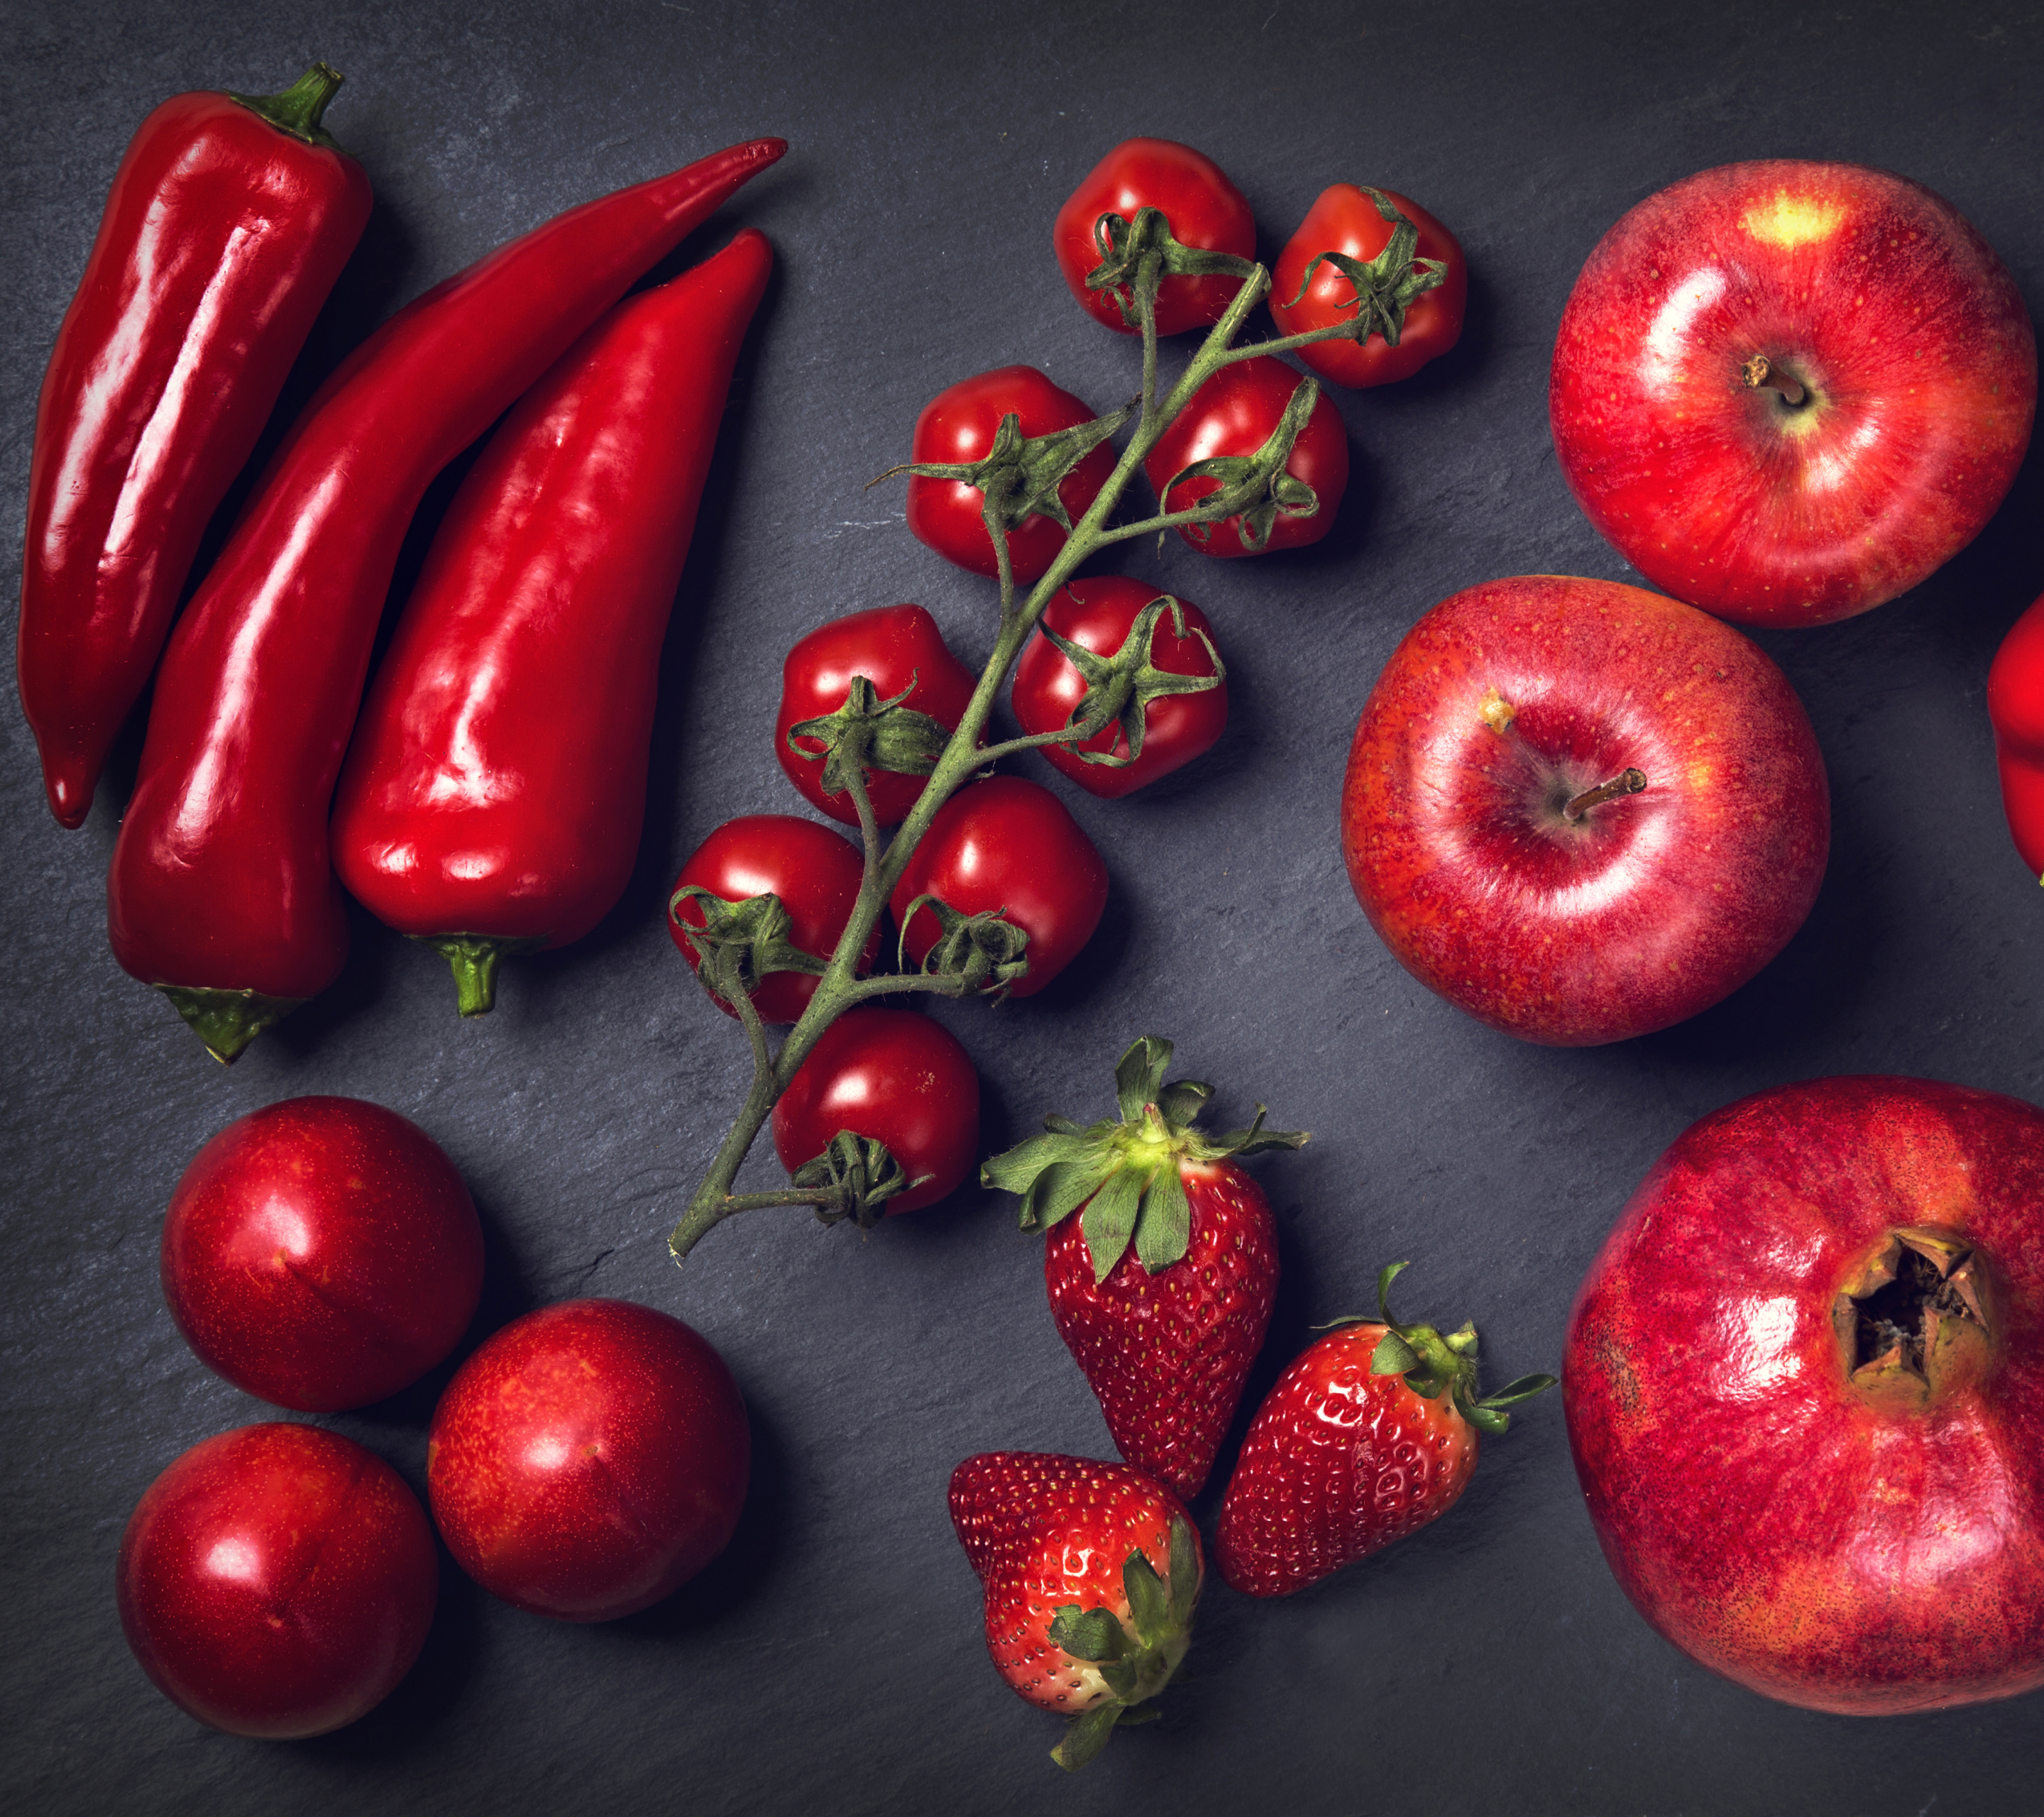 1118326 免費下載壁紙 食物, 水果, 石榴, 胡椒, 辣椒, 番茄, 桃, 草莓, 红色, 红色的, 苹果 屏保和圖片